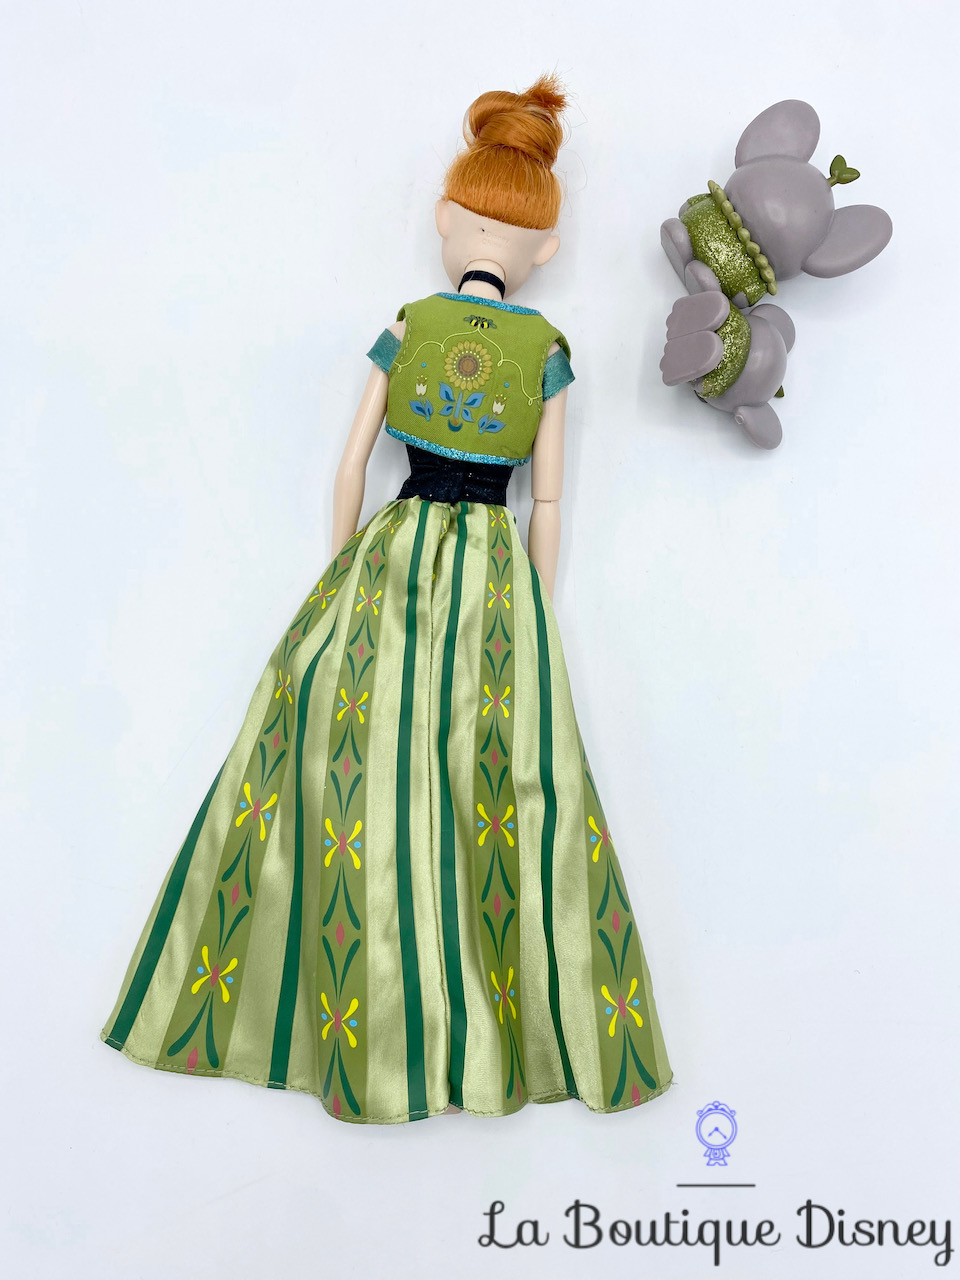 Anna en Robe Verte - La Reine des Neiges Disney